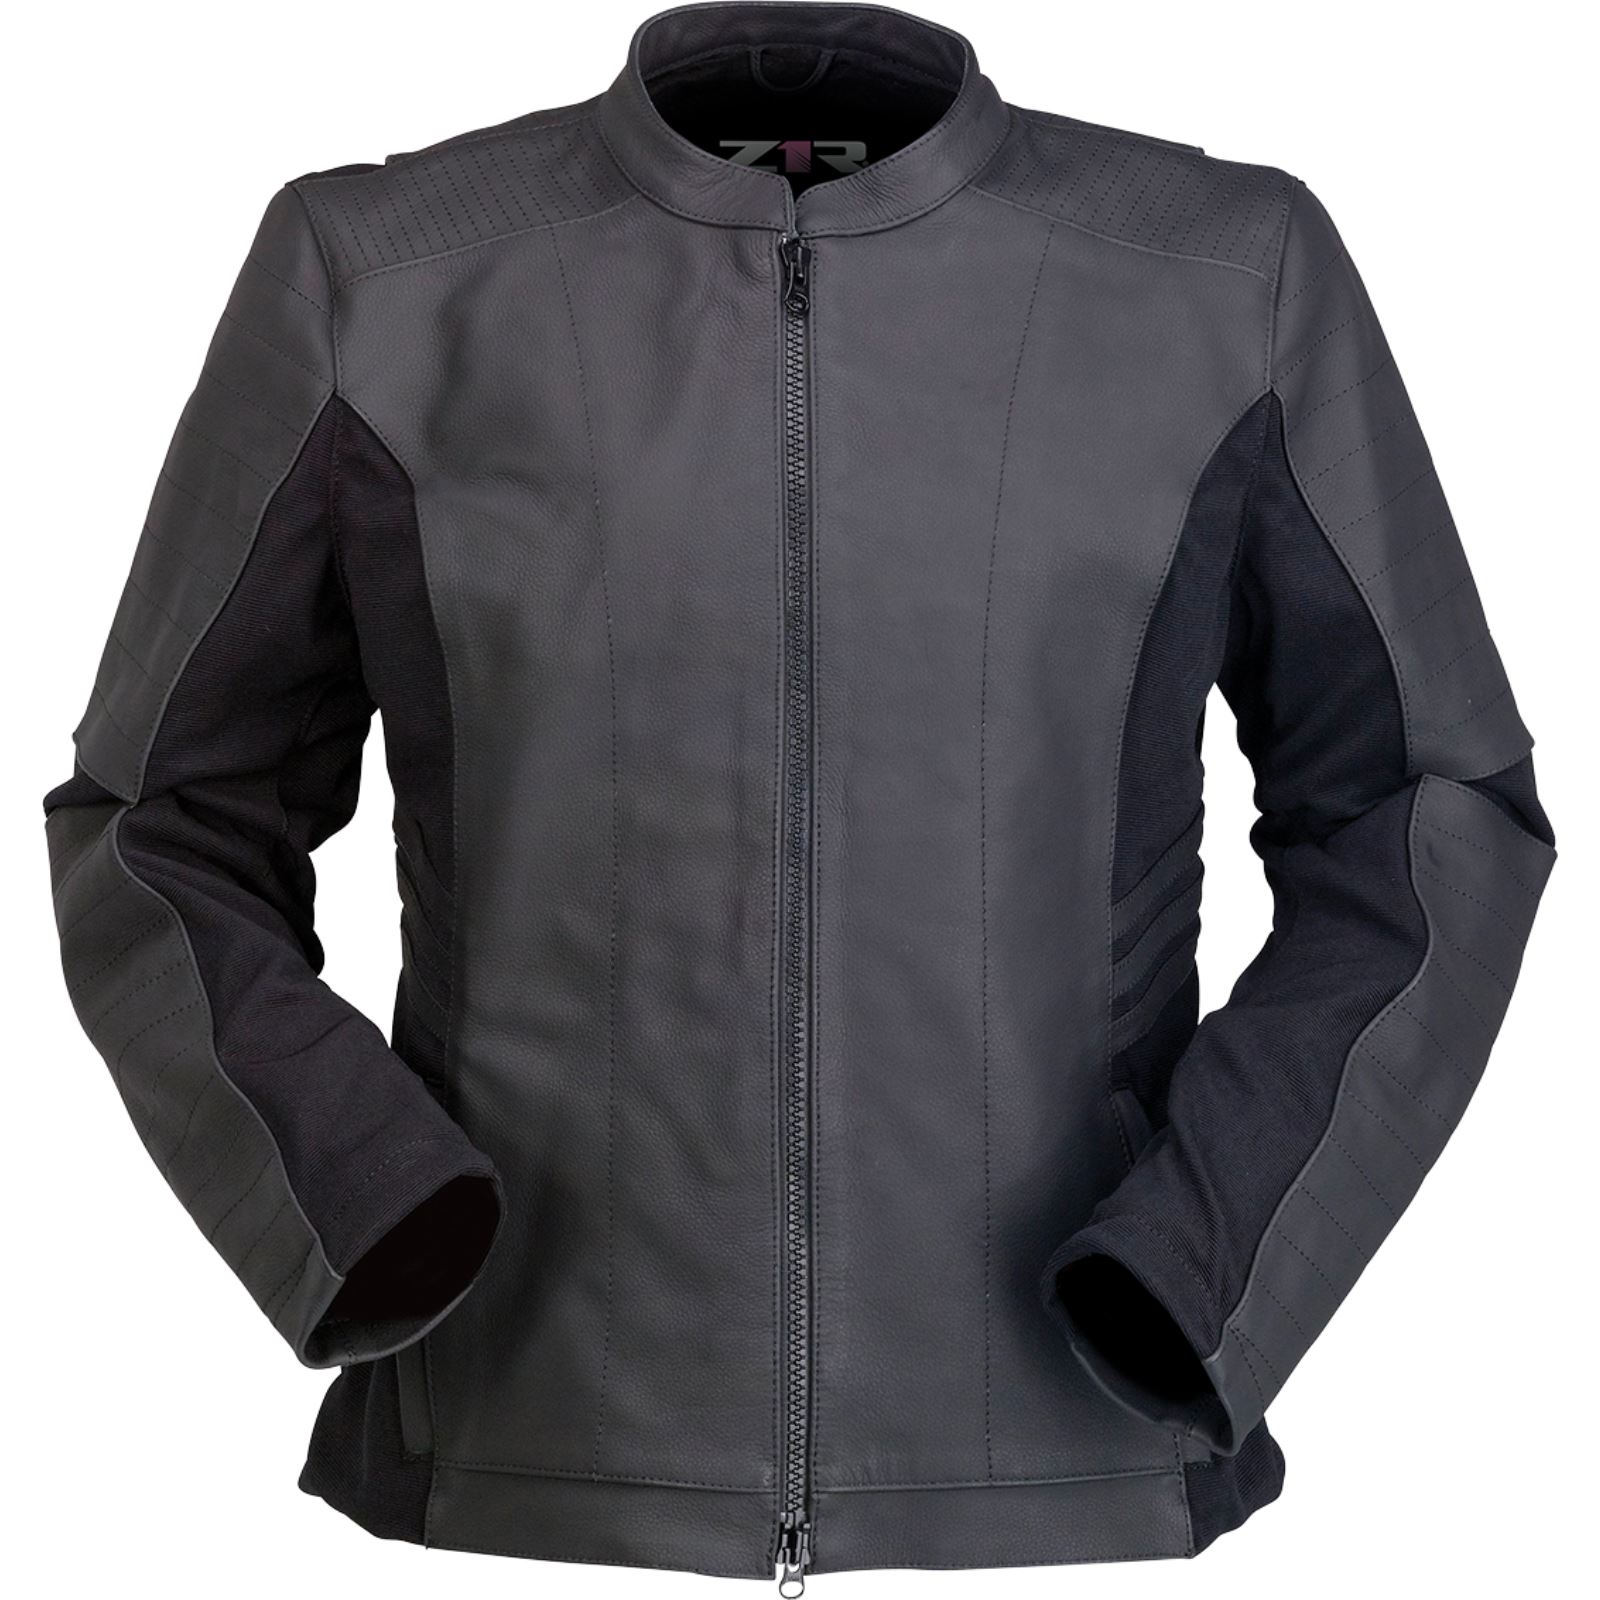 Kuda Rose official-Pedrito VM  Outfits, Motorcycle jacket, Jackets